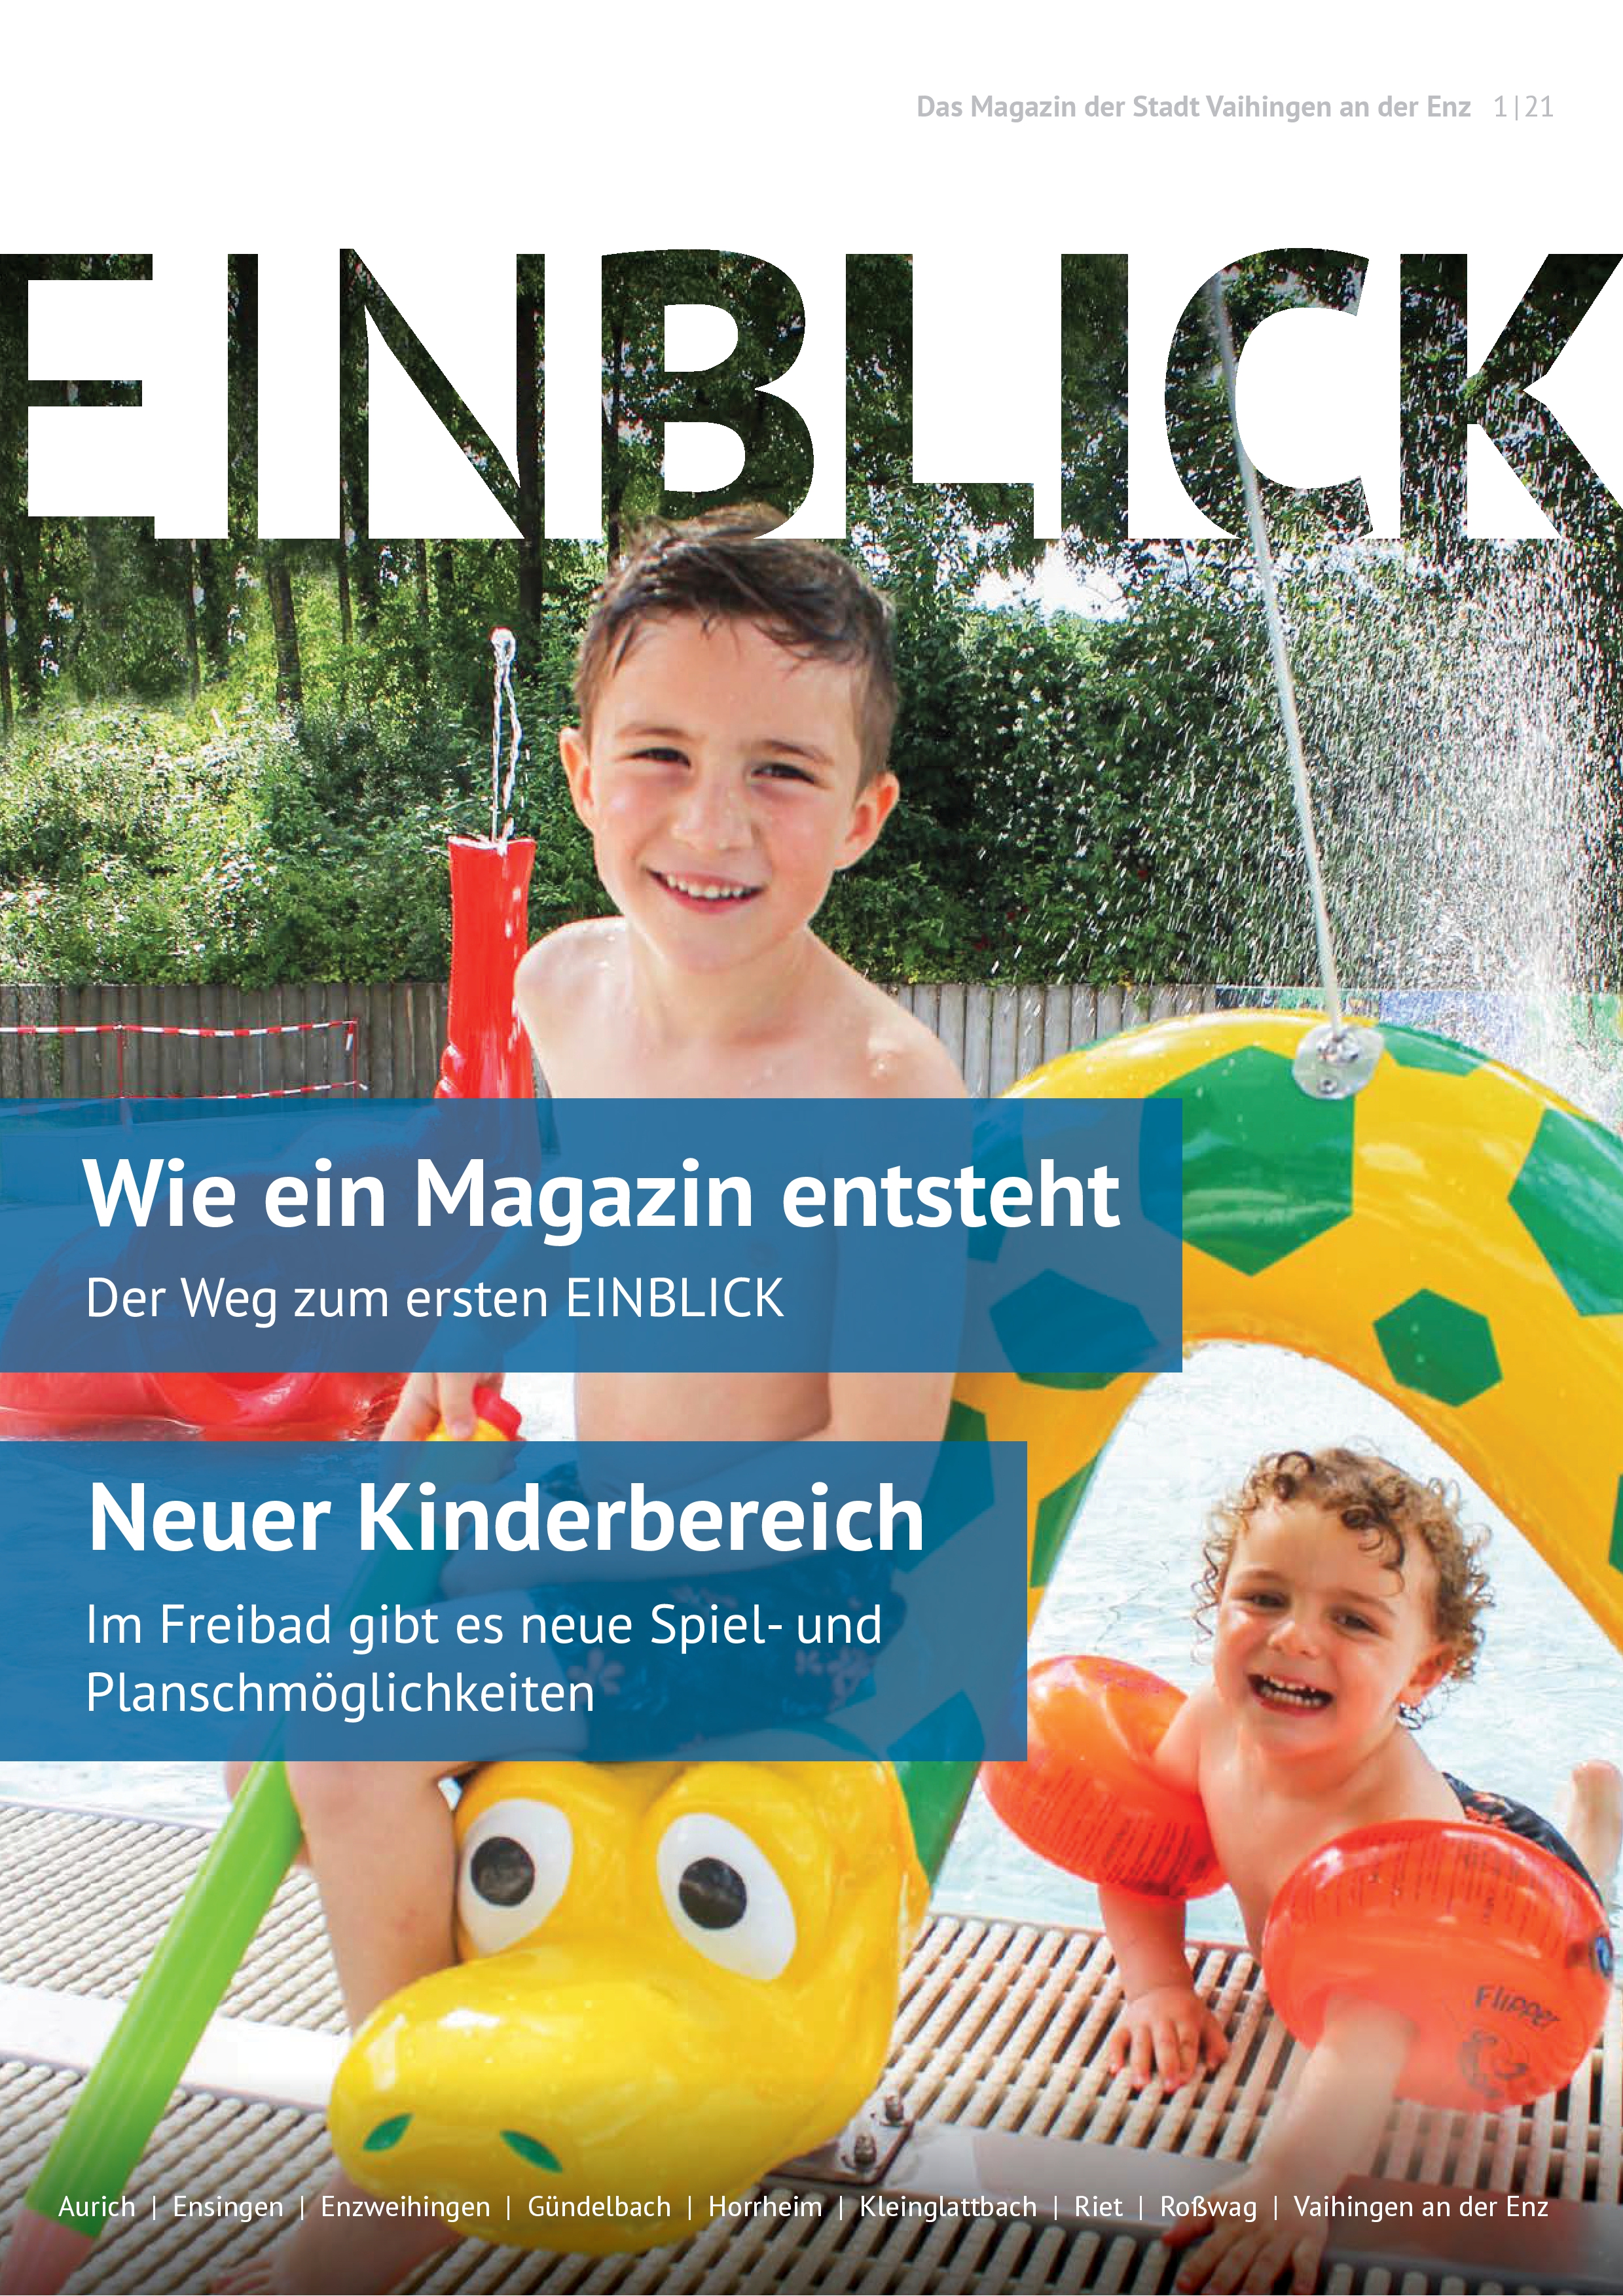 Titelblatt mit Kindern des Magazins Einblick